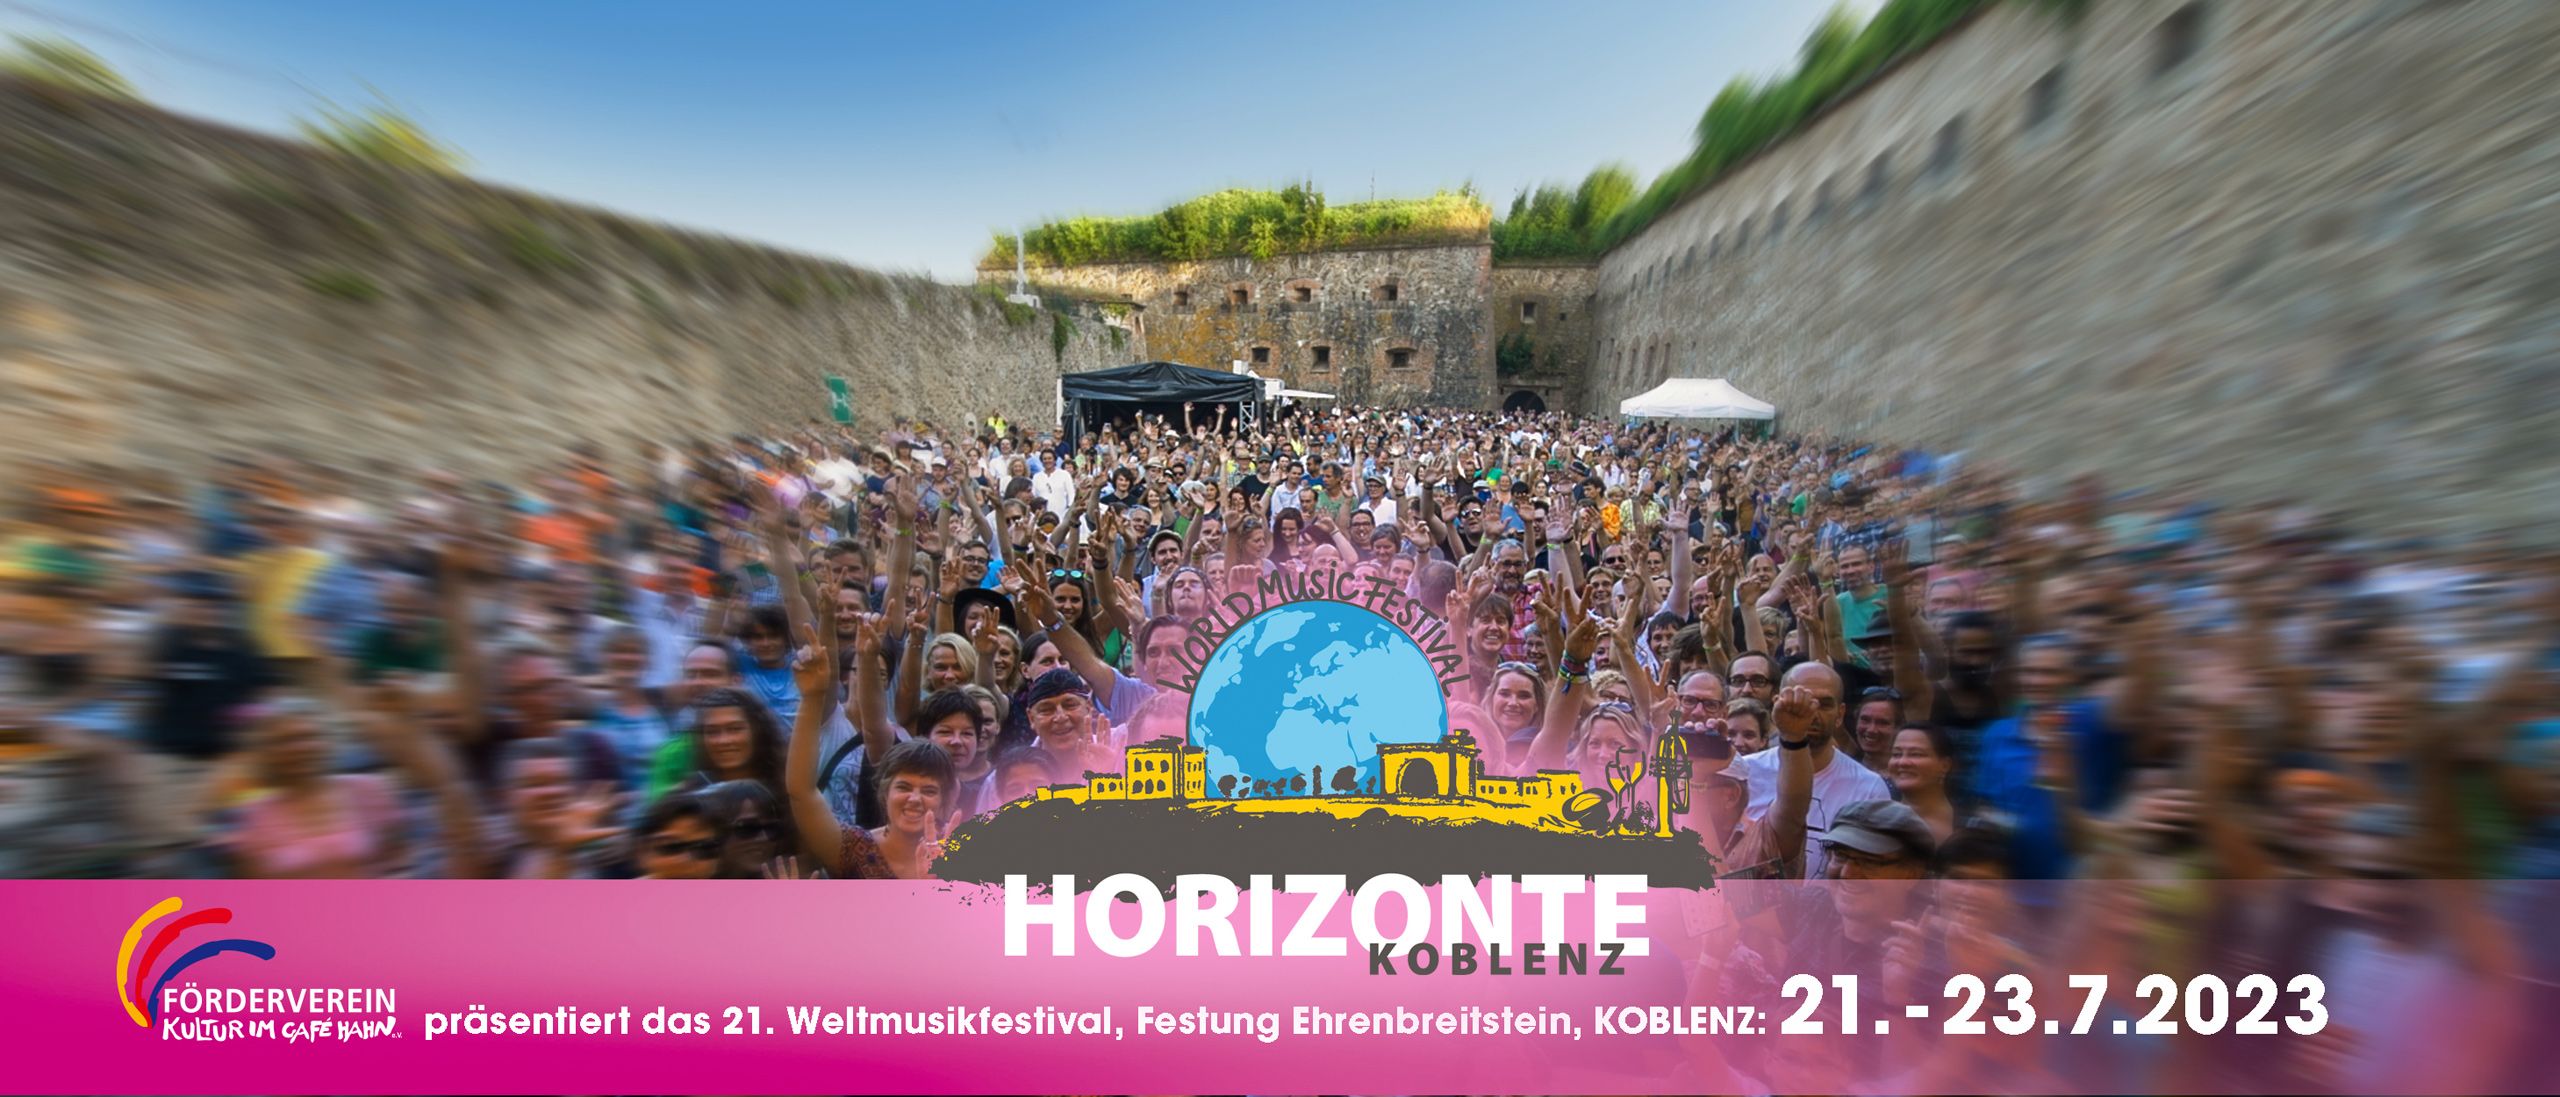 Bild zu Horizonte 2023 – 21. Weltmusikfestival